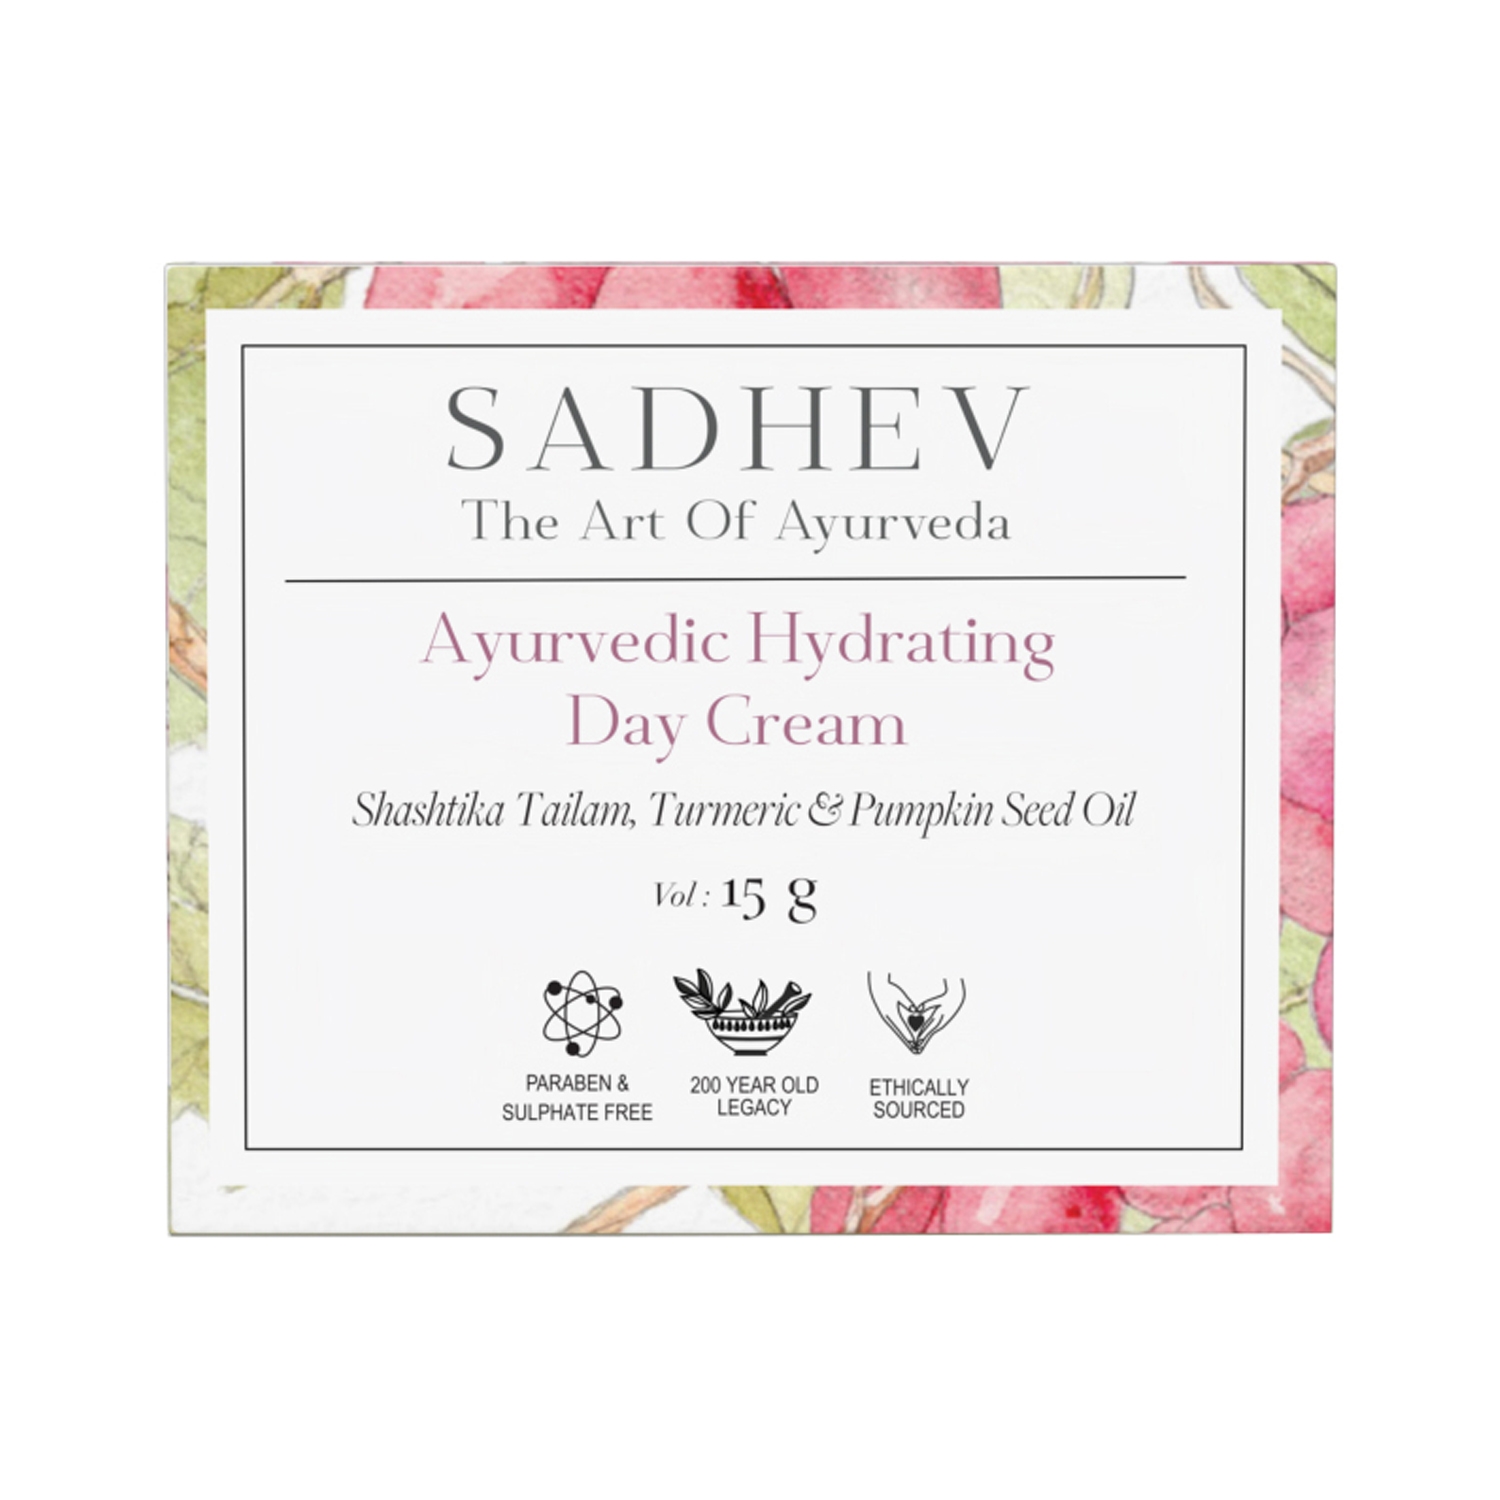 Sadhev Ayurvedic Hydrating Day Cream (15g)